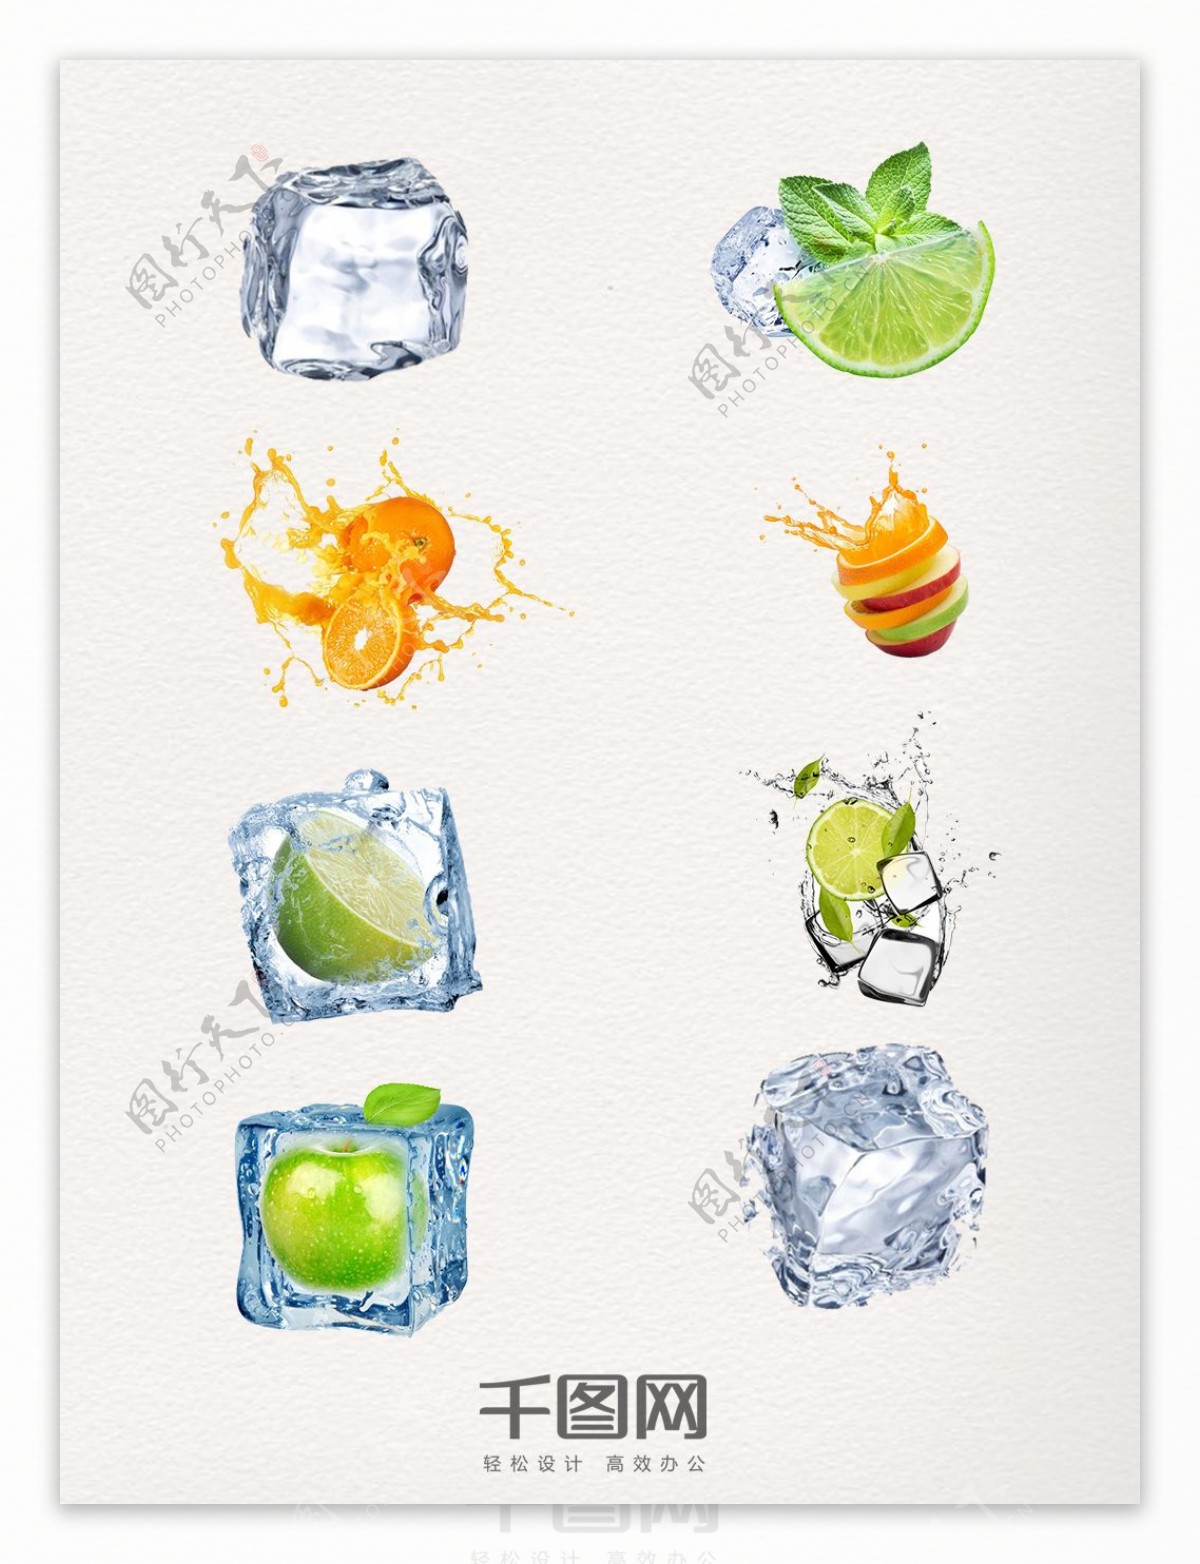 一组多样的果饮组合元素图案